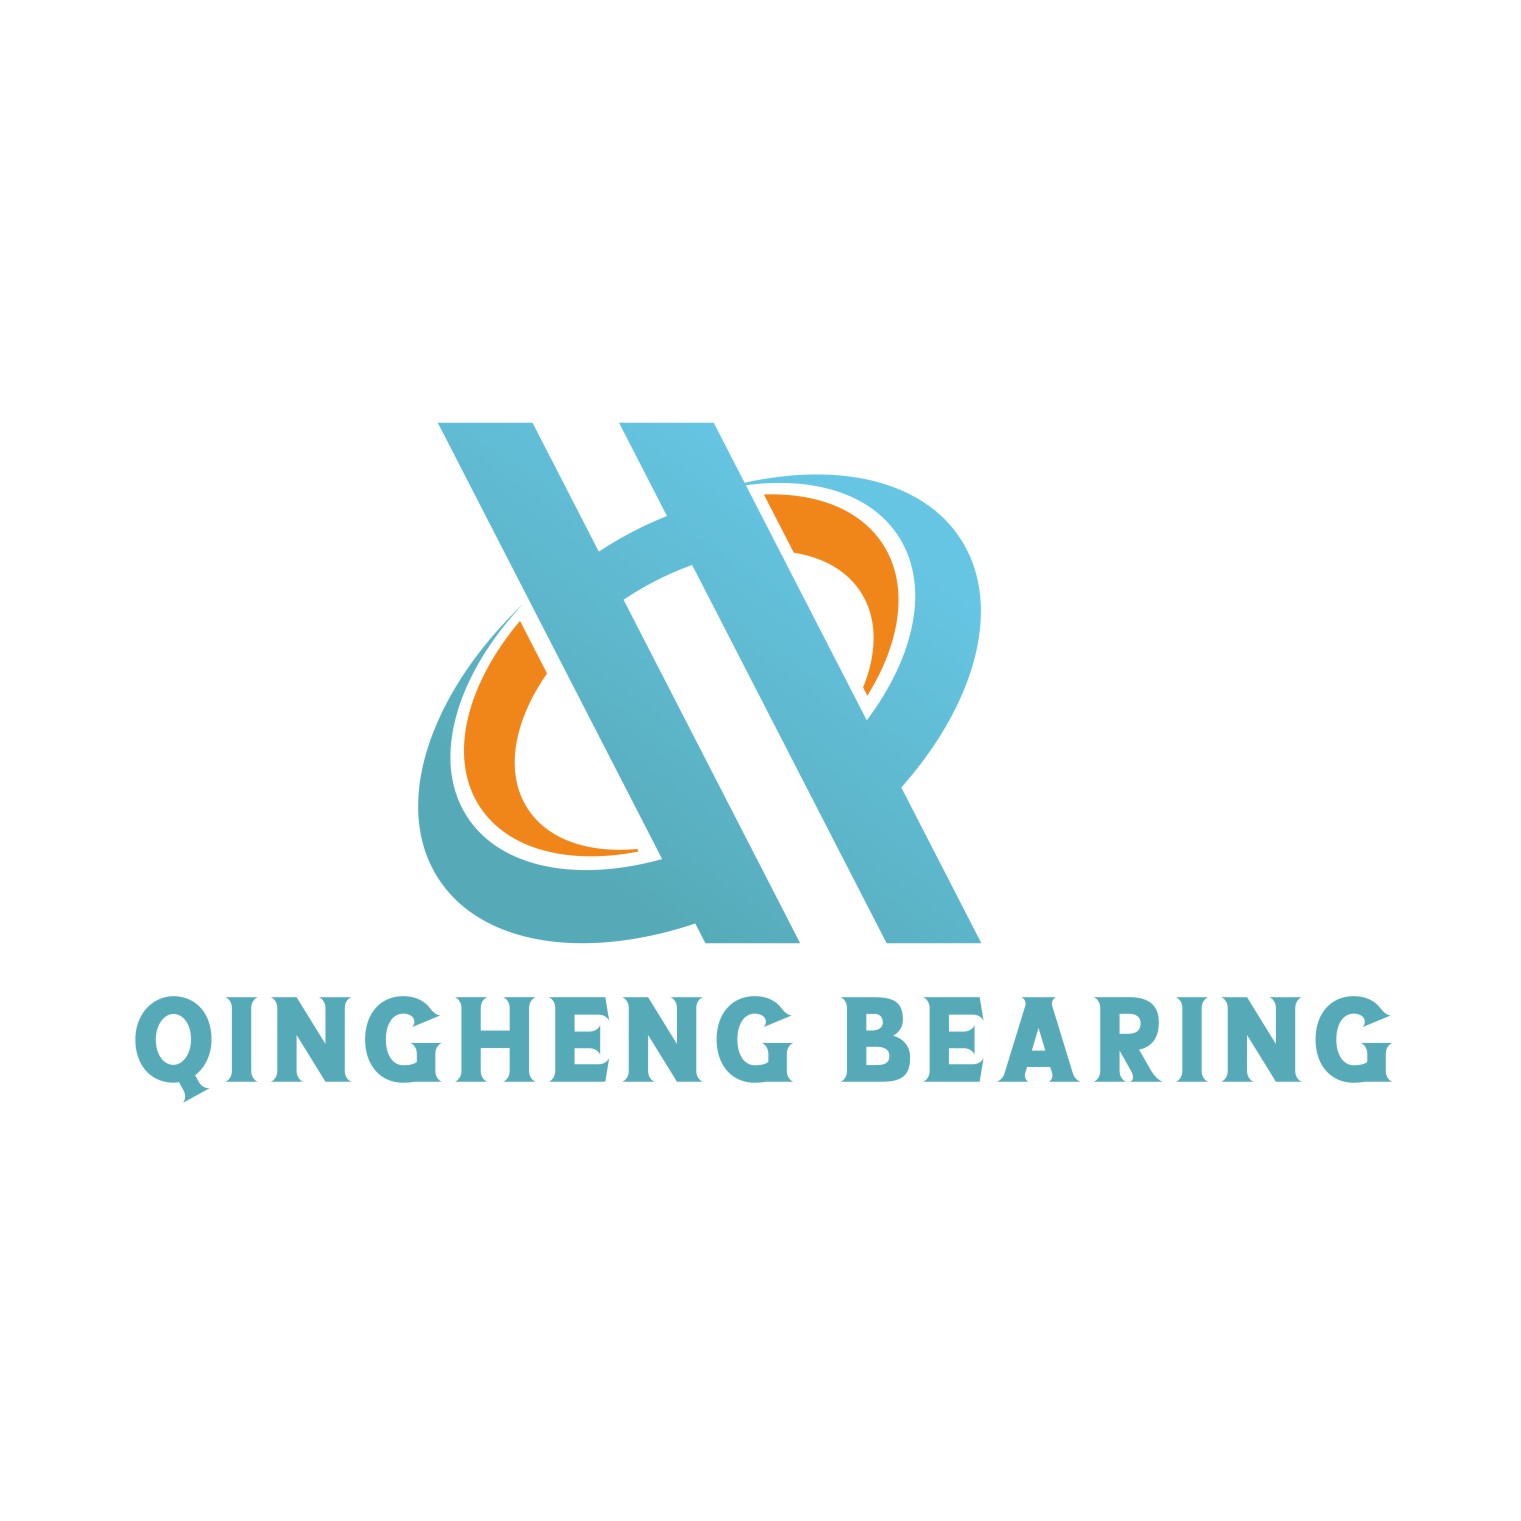  Qingheng